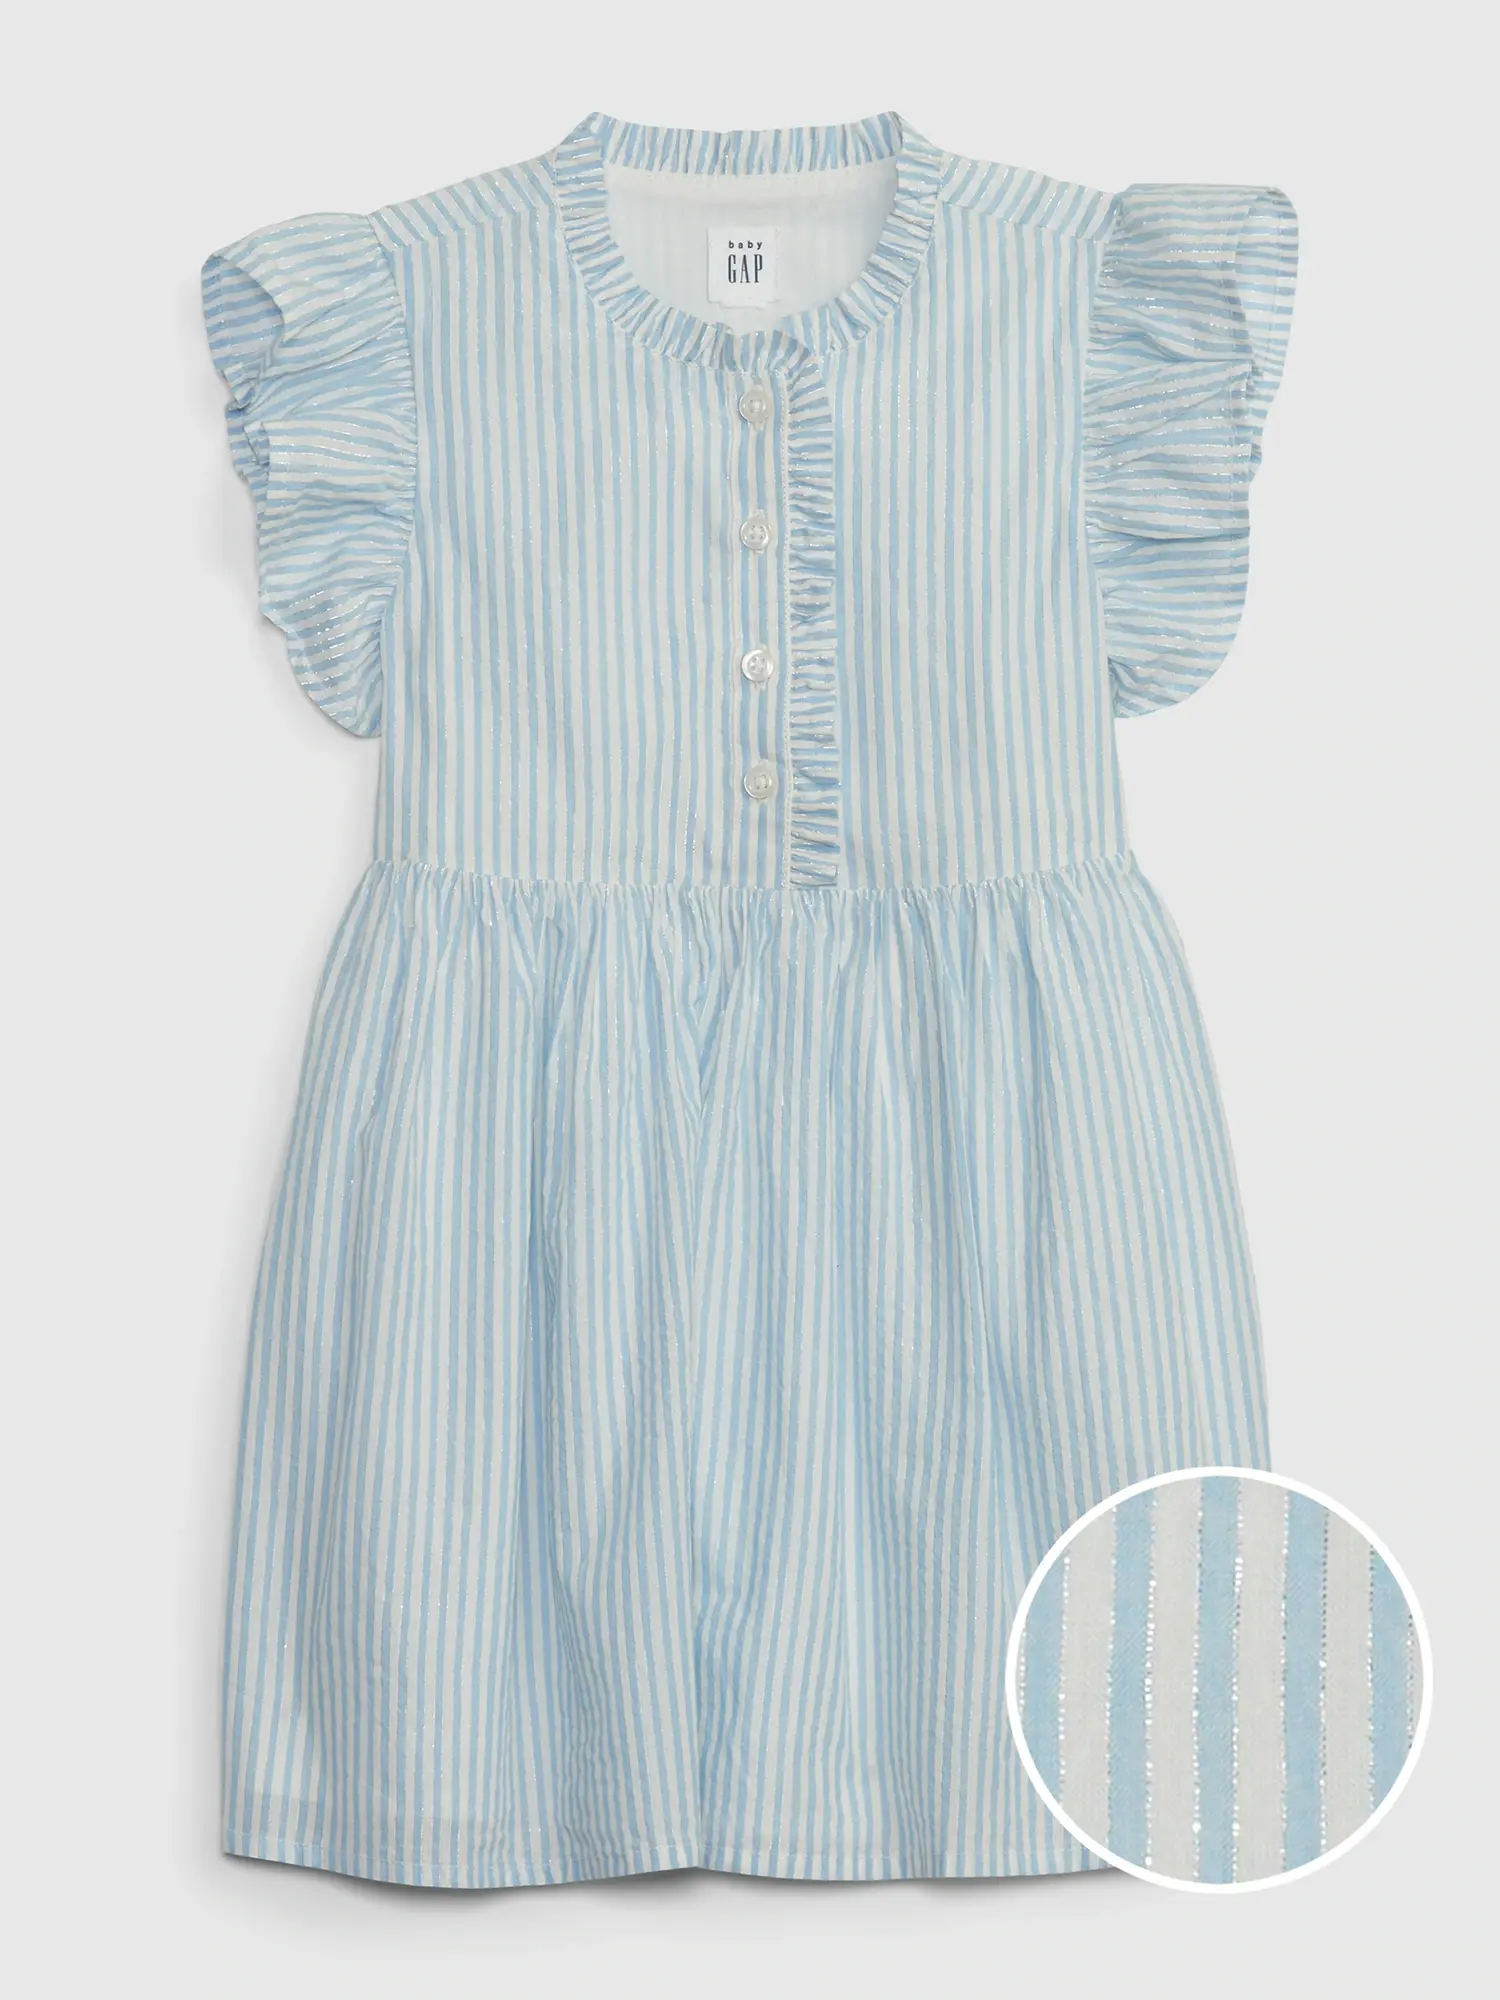 Gap Toddler Metallic Stripe Ruffle Dress blue. 1